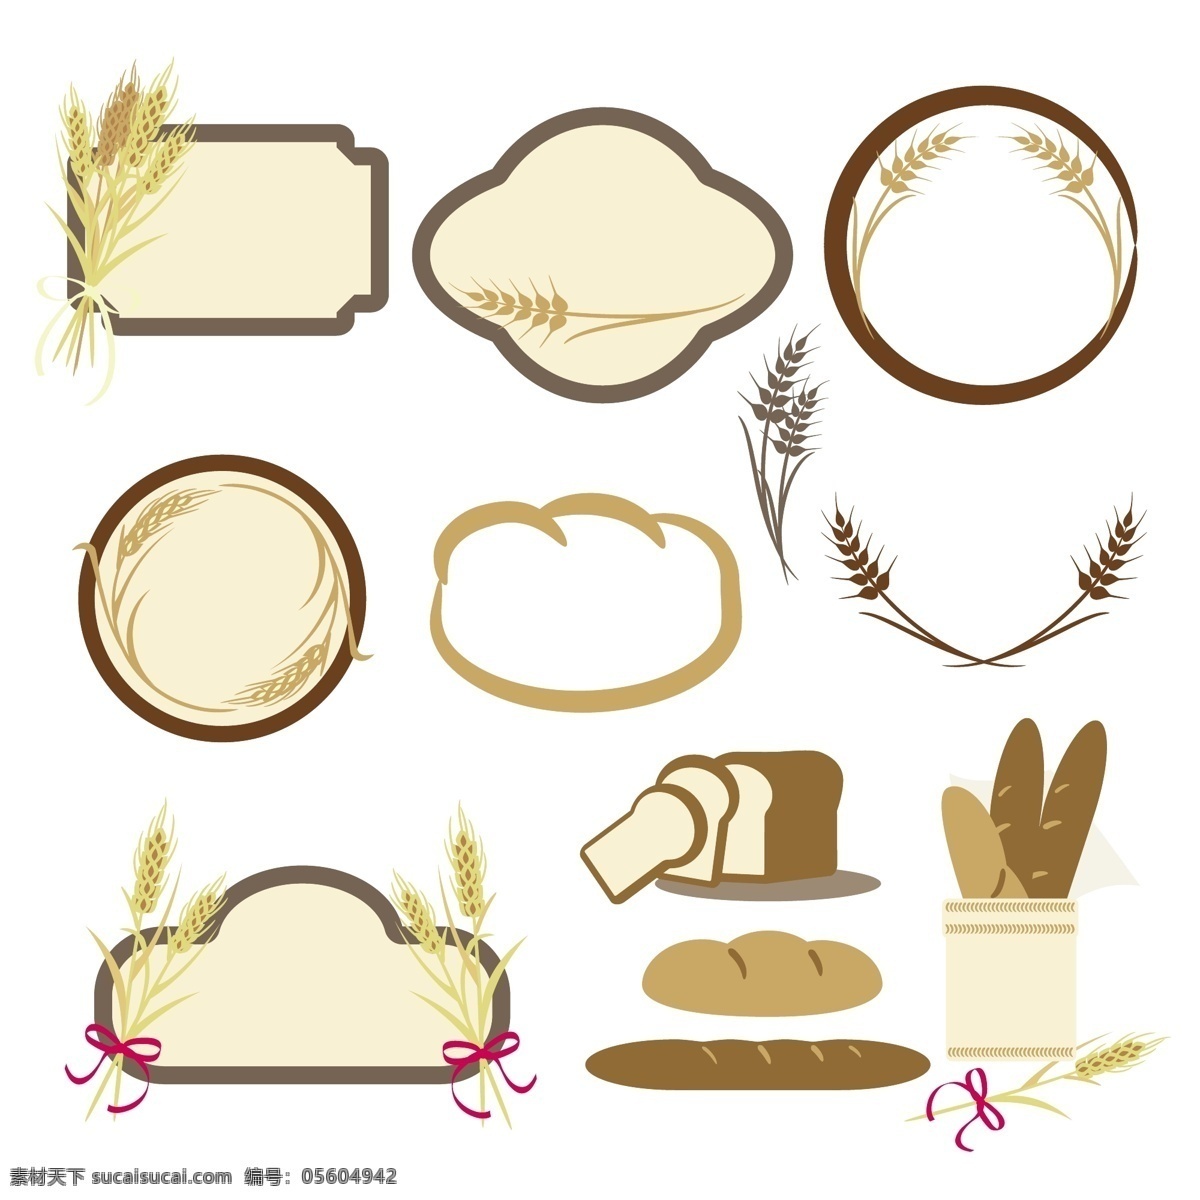 面包 麦穗 小麦 矢量 生活百科 餐饮美食 白色